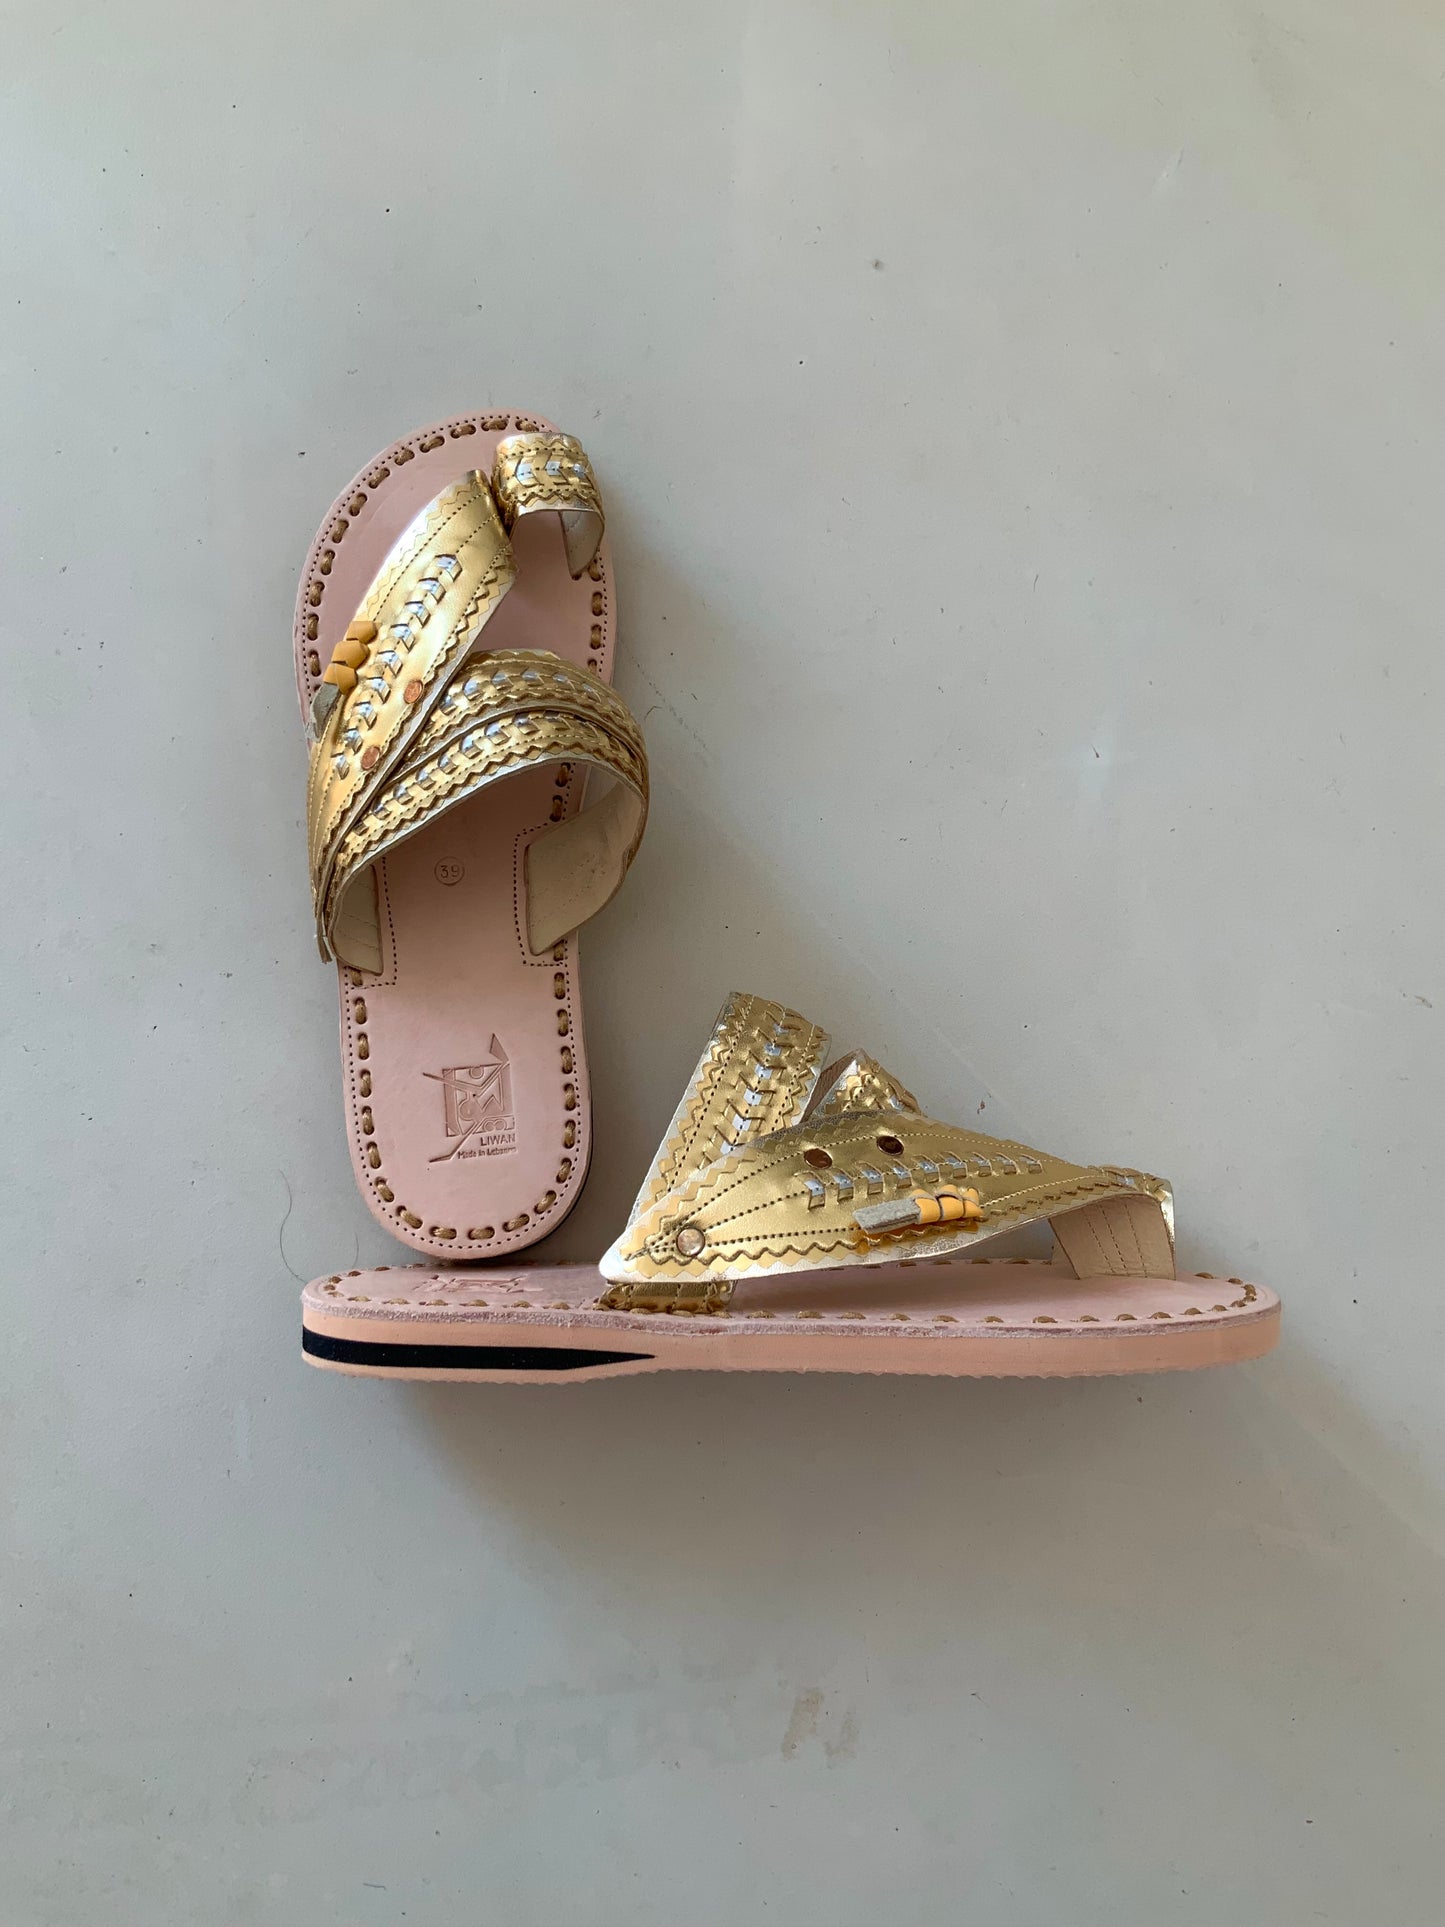 Shoes Women - Liwan Shiny Gold Jinane Sandals